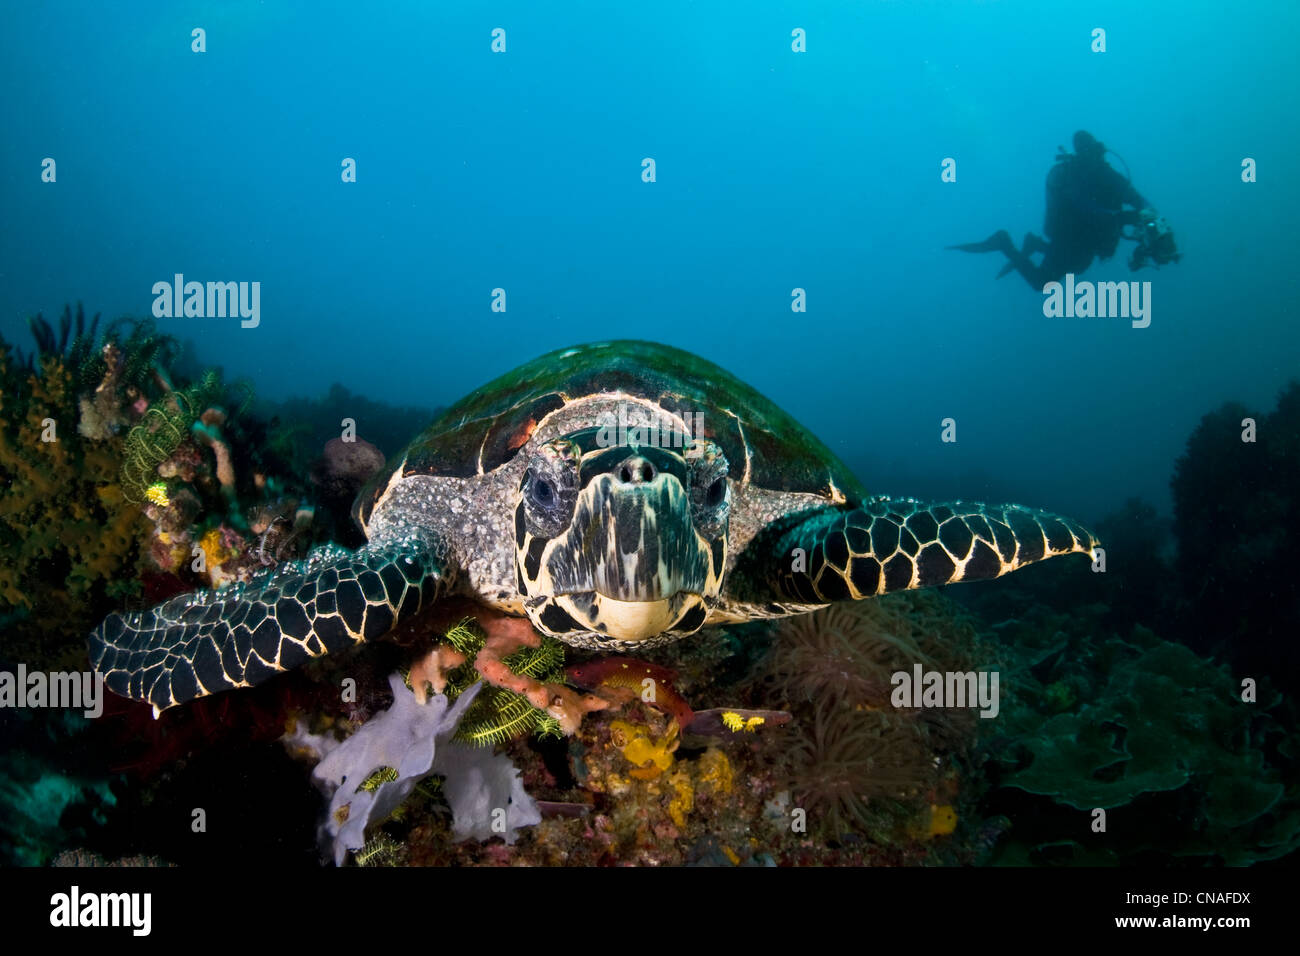 Une tortue de mer tortue imbriquée, Eretmochelys imbricata, explore la diversité de corail à la recherche de produits alimentaires tels que les éponges. Cannibal Rock. Banque D'Images